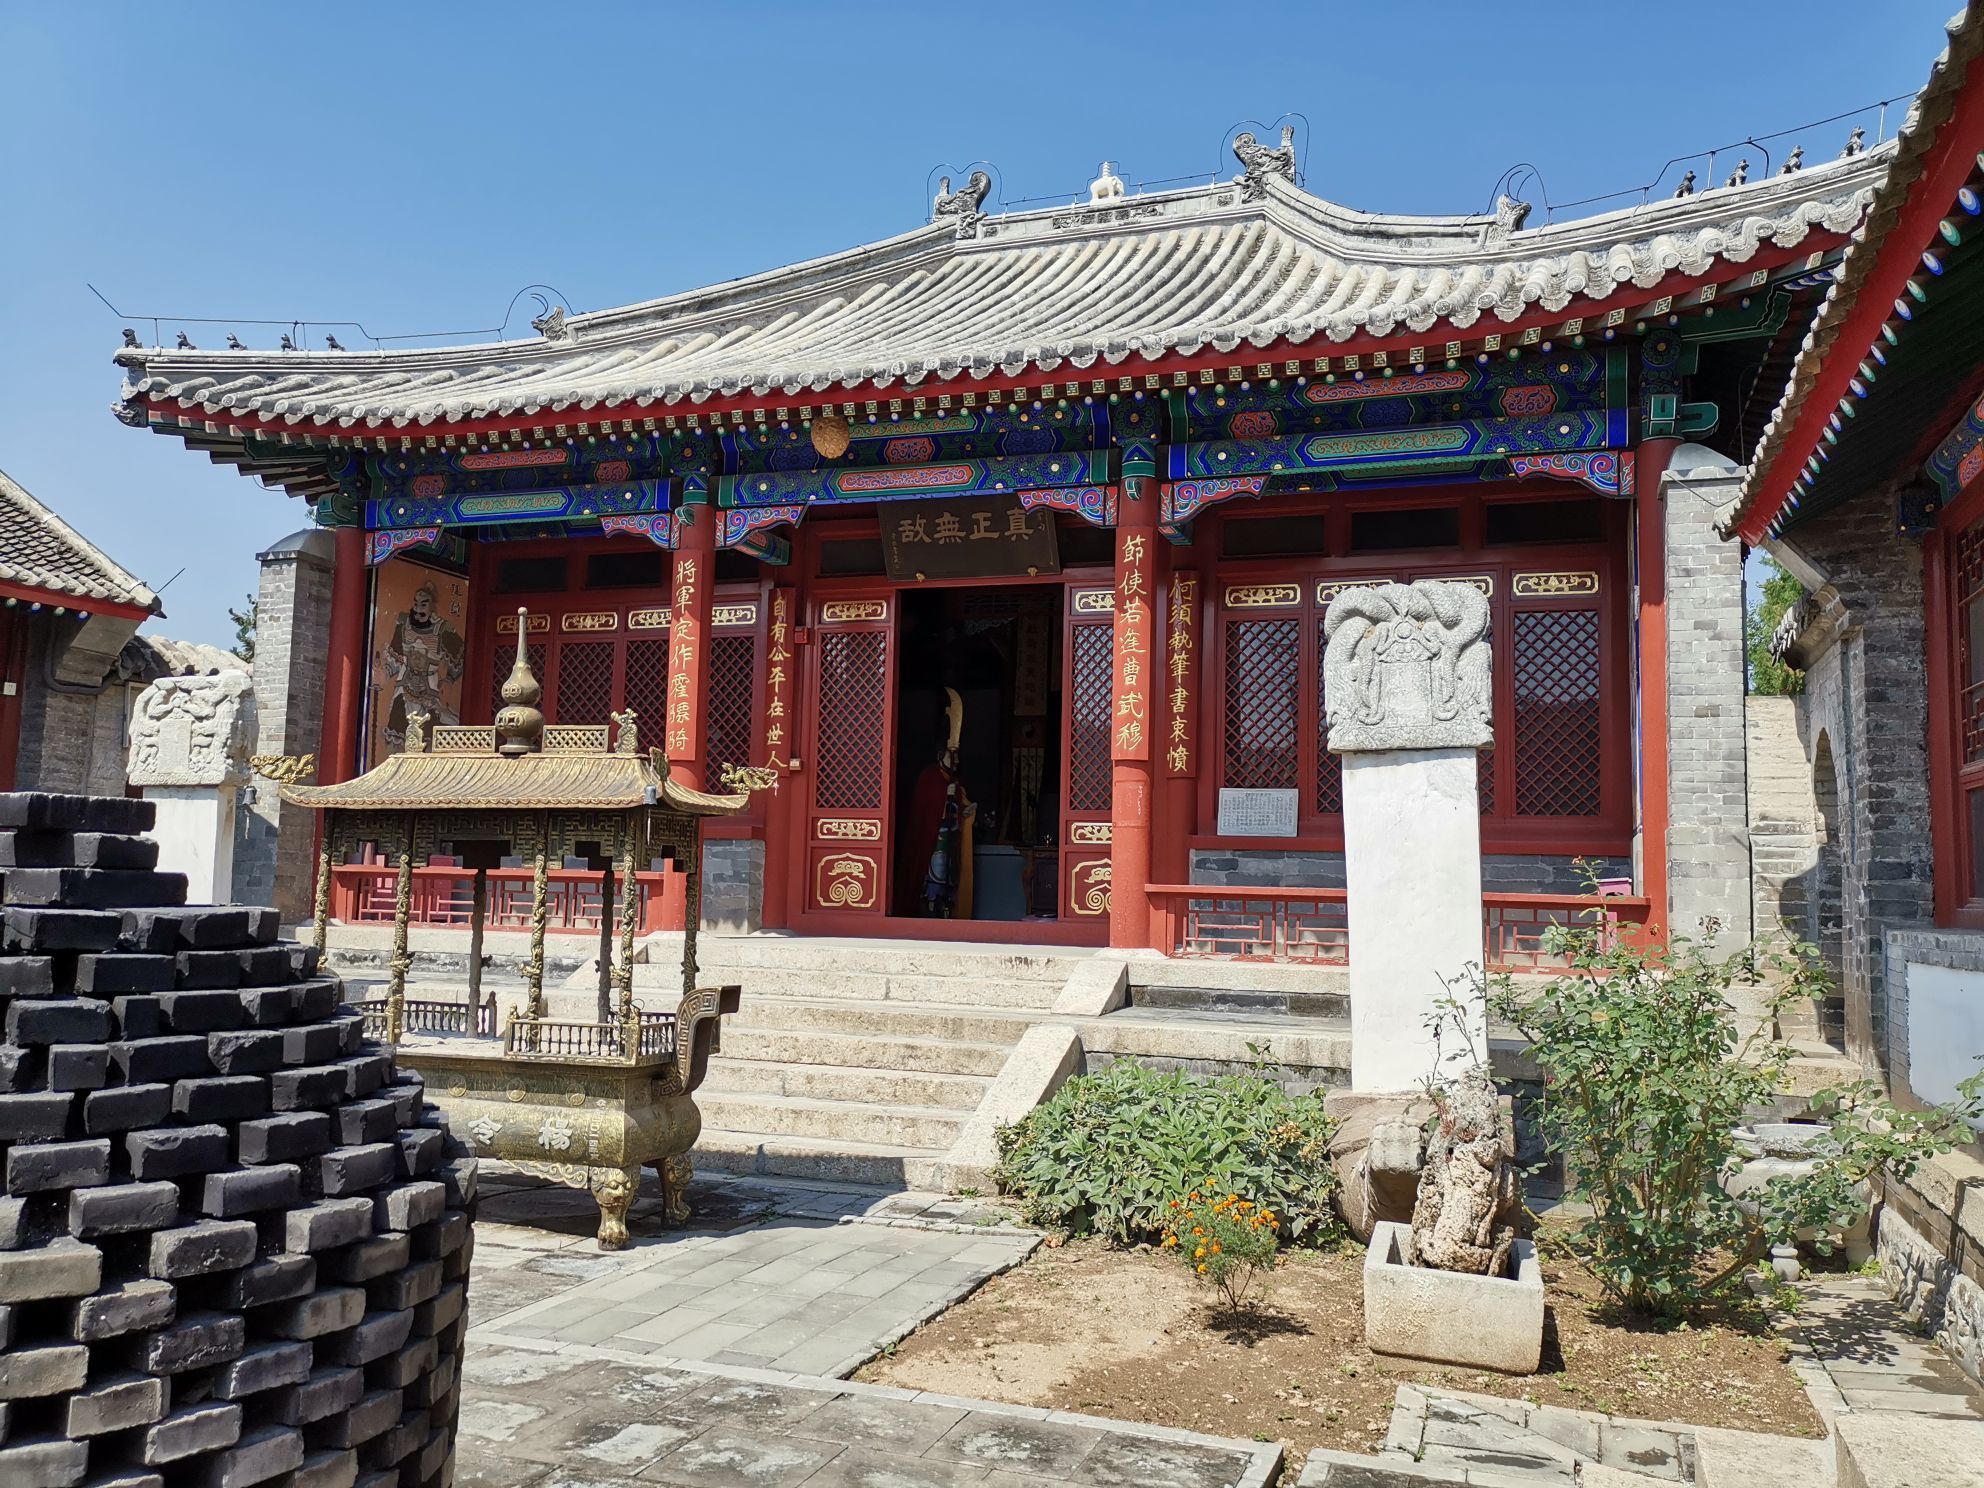 扬州旅游必去的老街 中国十大历史文化名街 与南京的夫子庙很像_排行榜